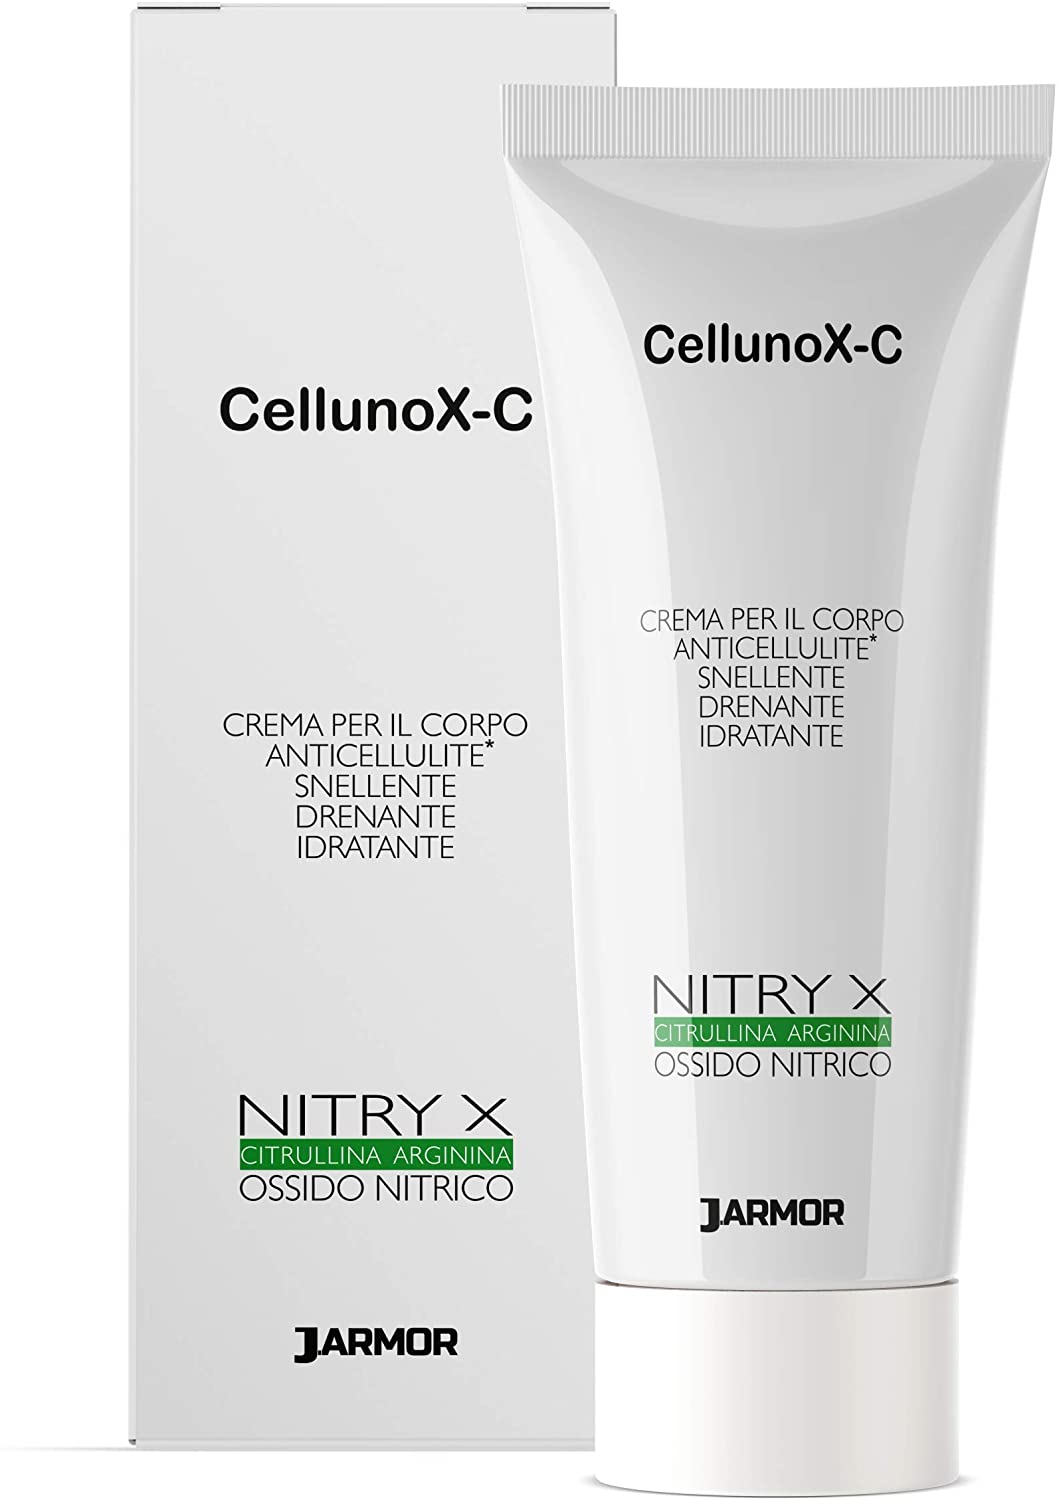 3-cellunox